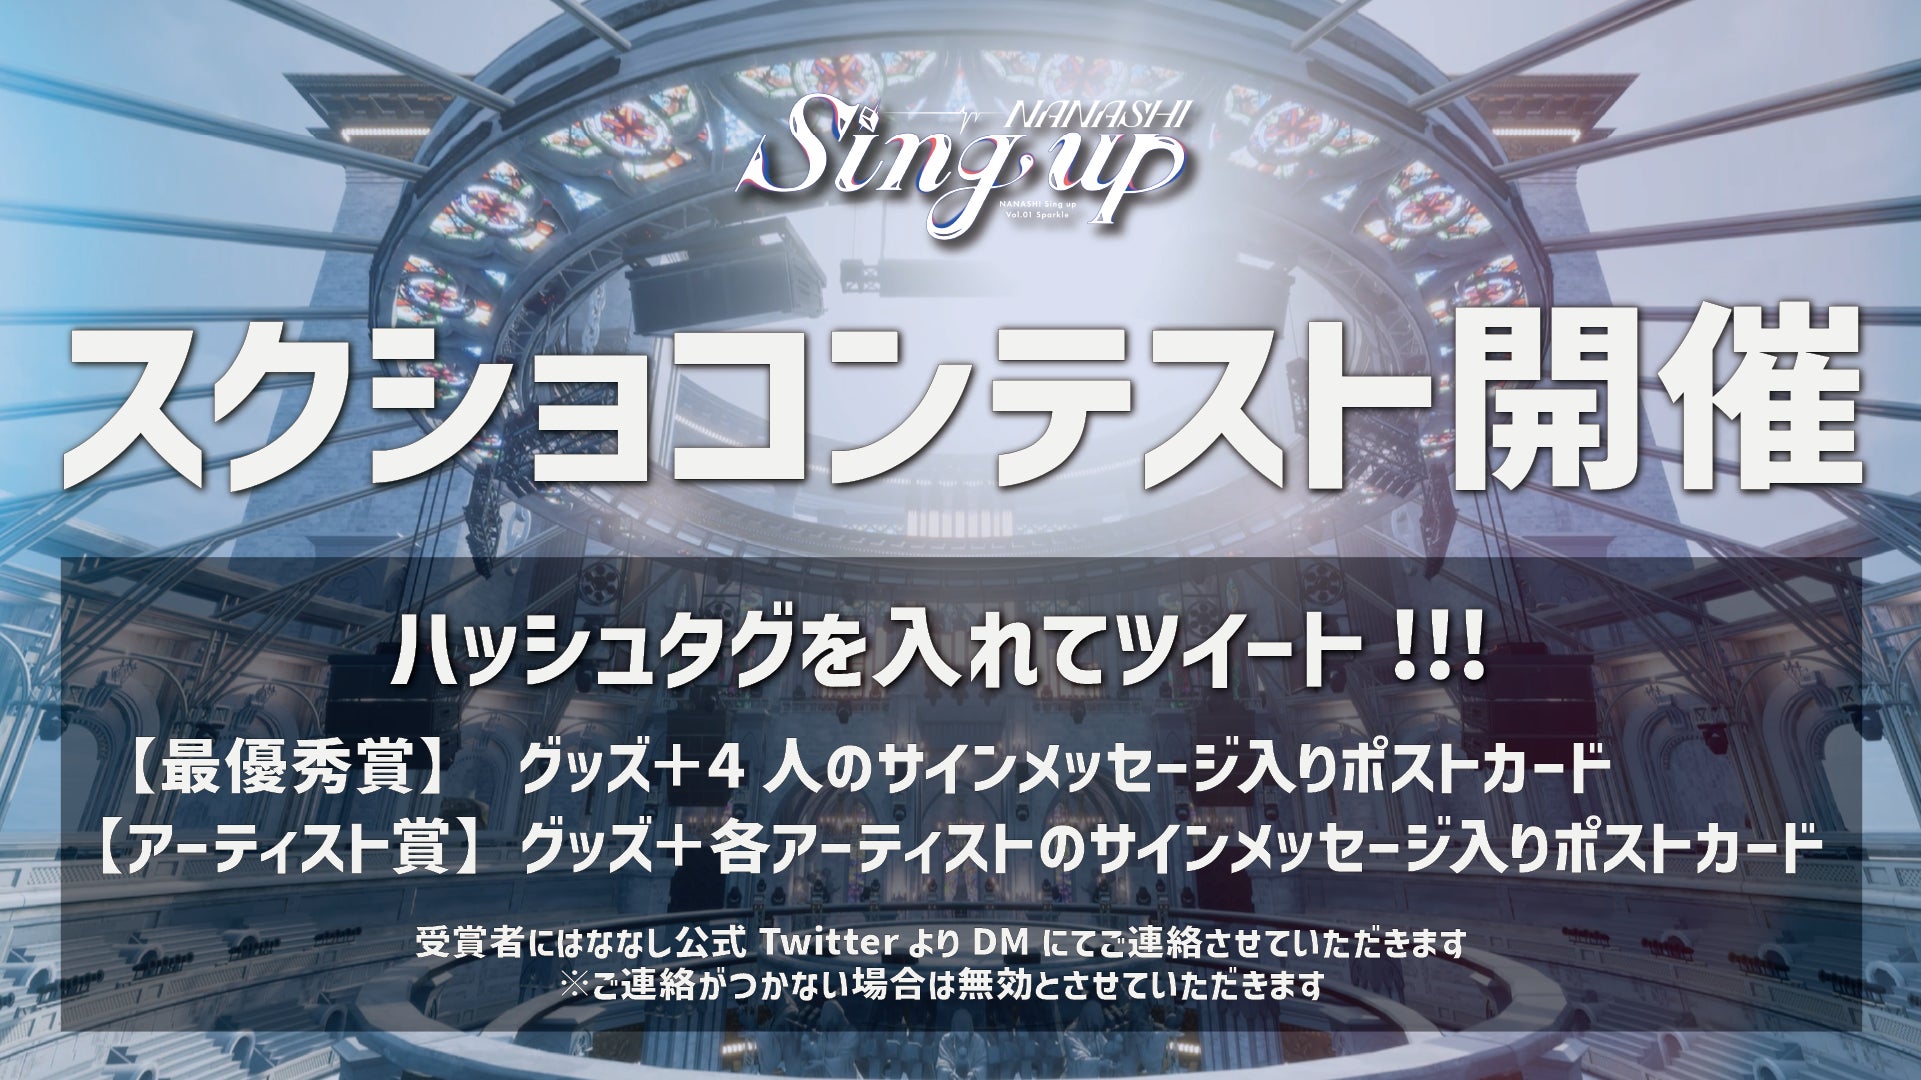 【ななしいんく】新環境3D無料ライブ『NANASHI Sing up vol.1-Sparkle-』5/3(水)19:00- 開催！追加情報公開のサブ画像1